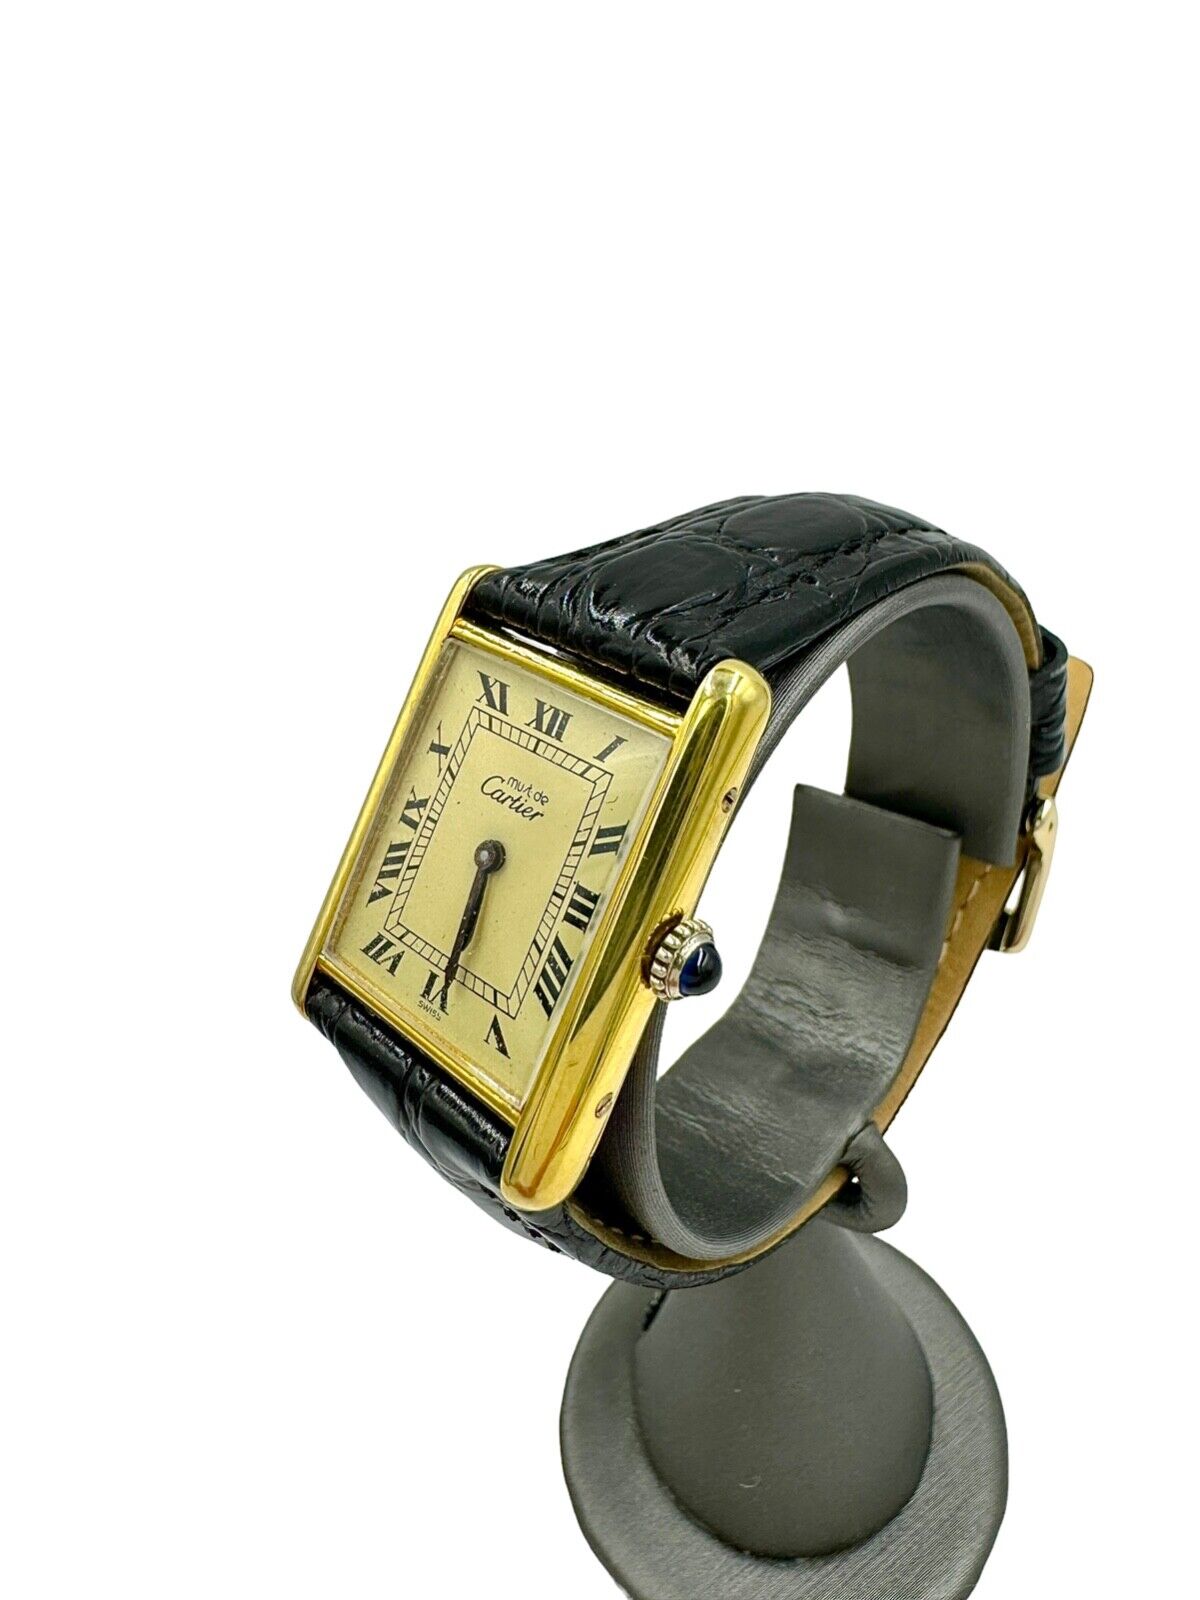 Cartier Must Tank Manual Wind Wristwatch Watch Argent 925 Gold Vermeil